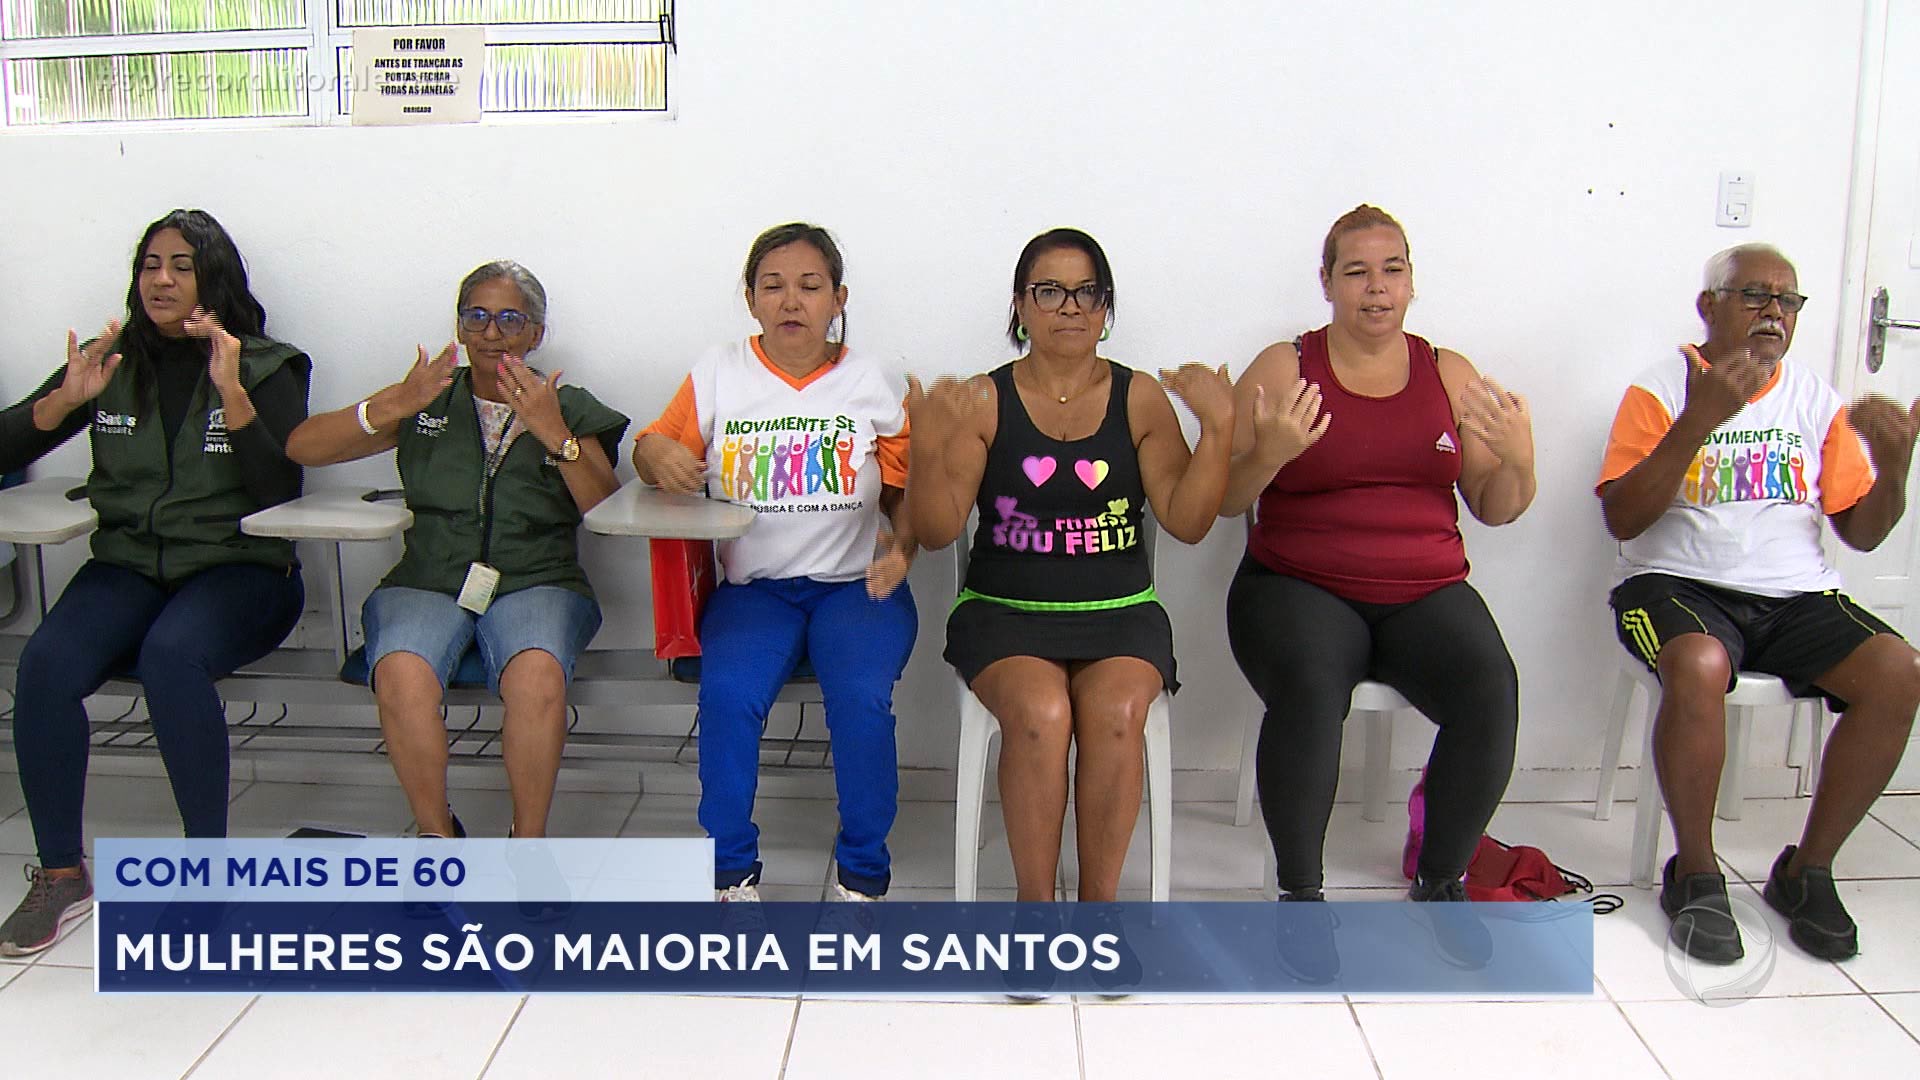 Vídeo: A cidade de Santos tem mais mulheres idosas do que homens